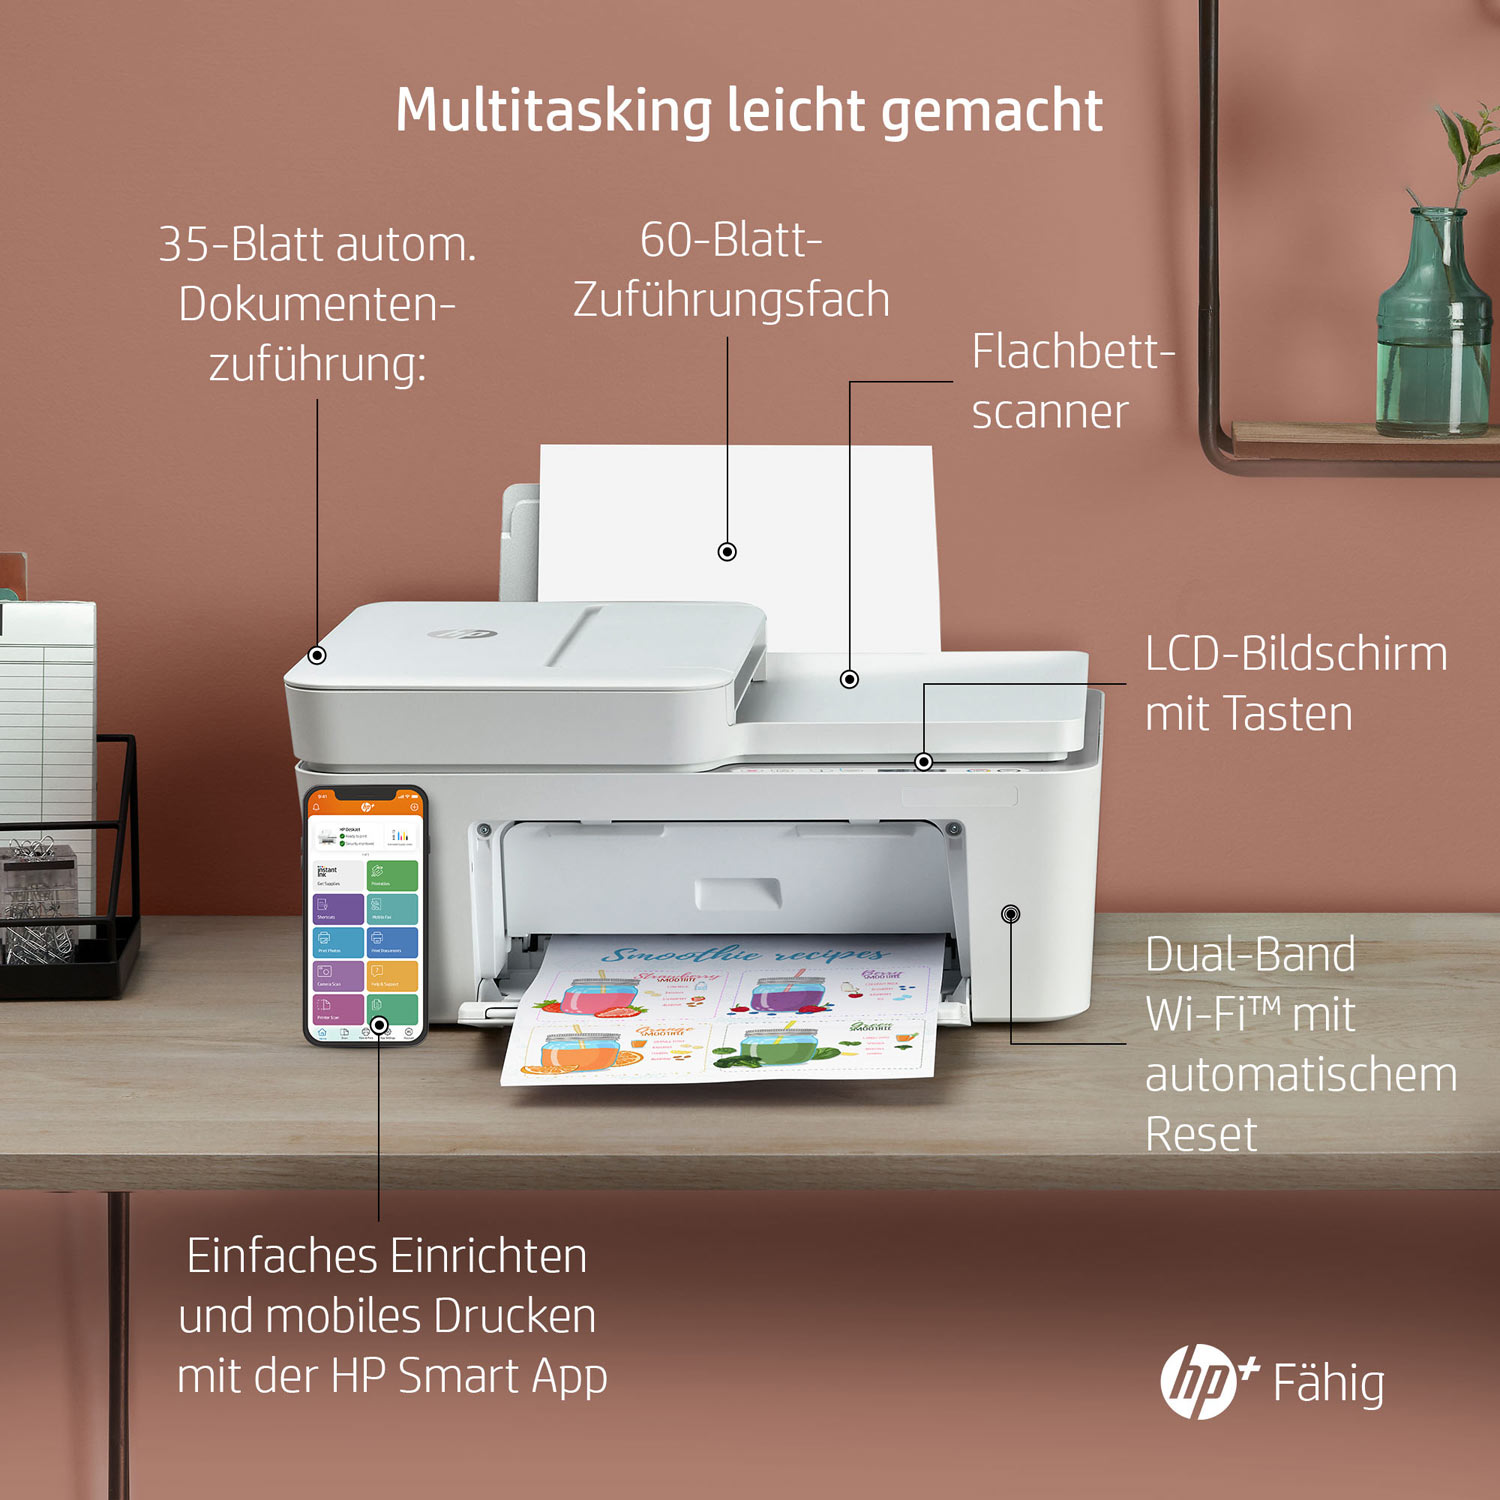 Features HP DeskJet 4120e Multifunktionsdrucker 